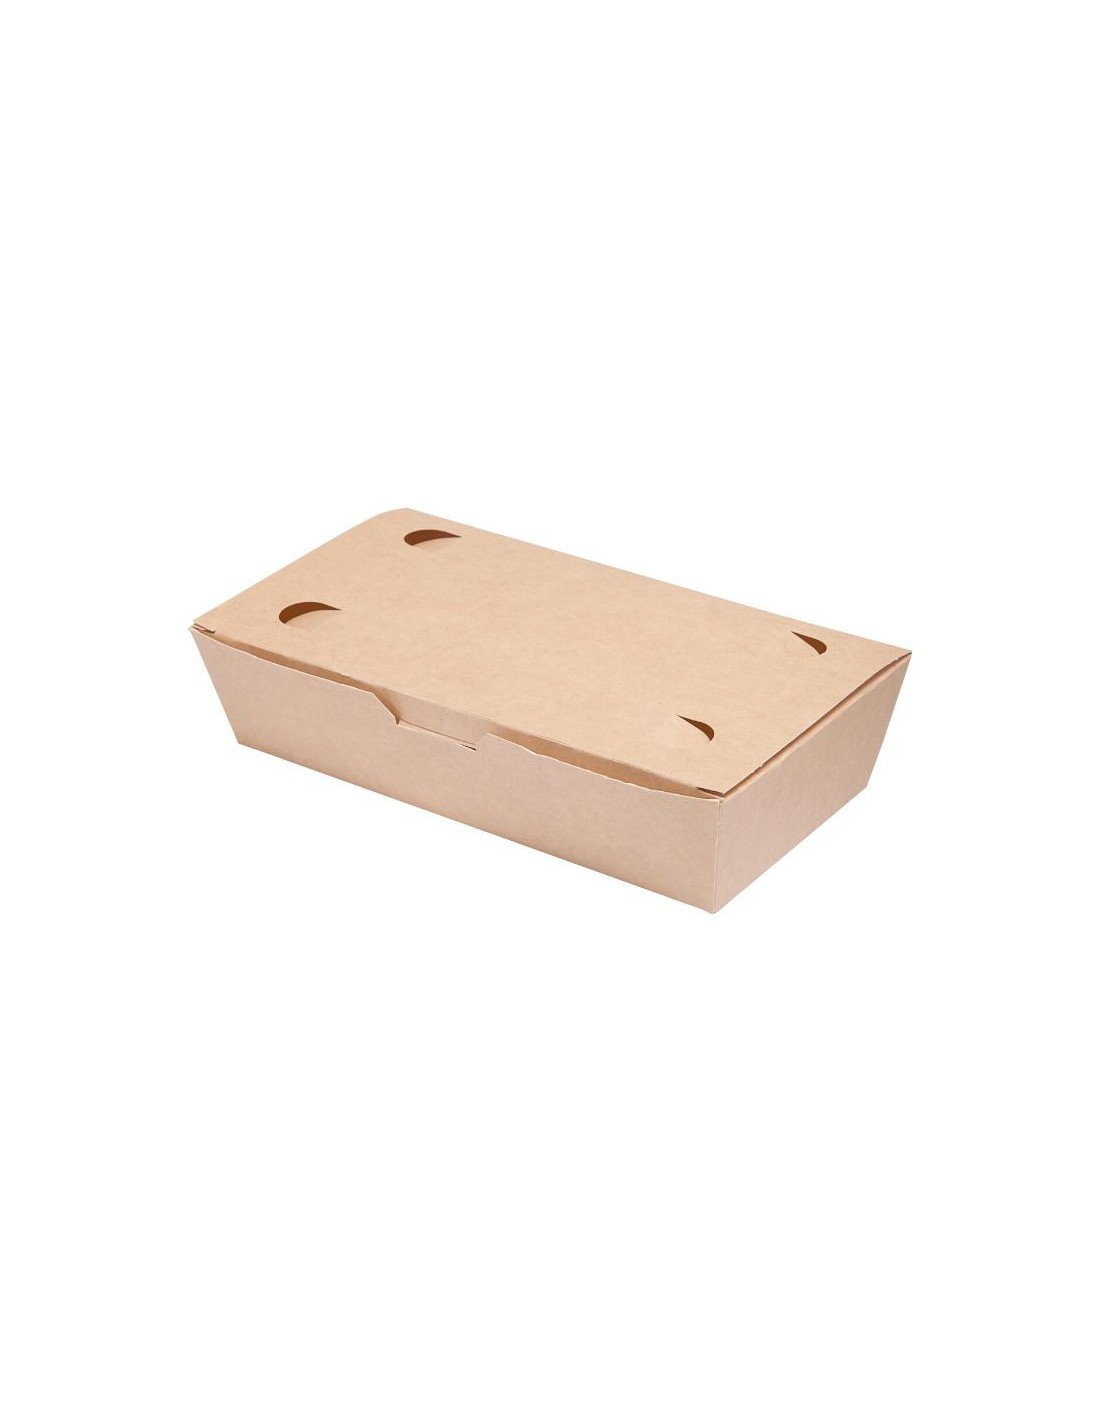 BIOZOYG Confezioni di Cartone Asia 1000ml I 300 Lunch Box I Confezione Take Away in Cartone Riciclato con Rivestimento biodegradabile Anti perdite I Contenitore di Cartone Kraft 11x9x8cm 